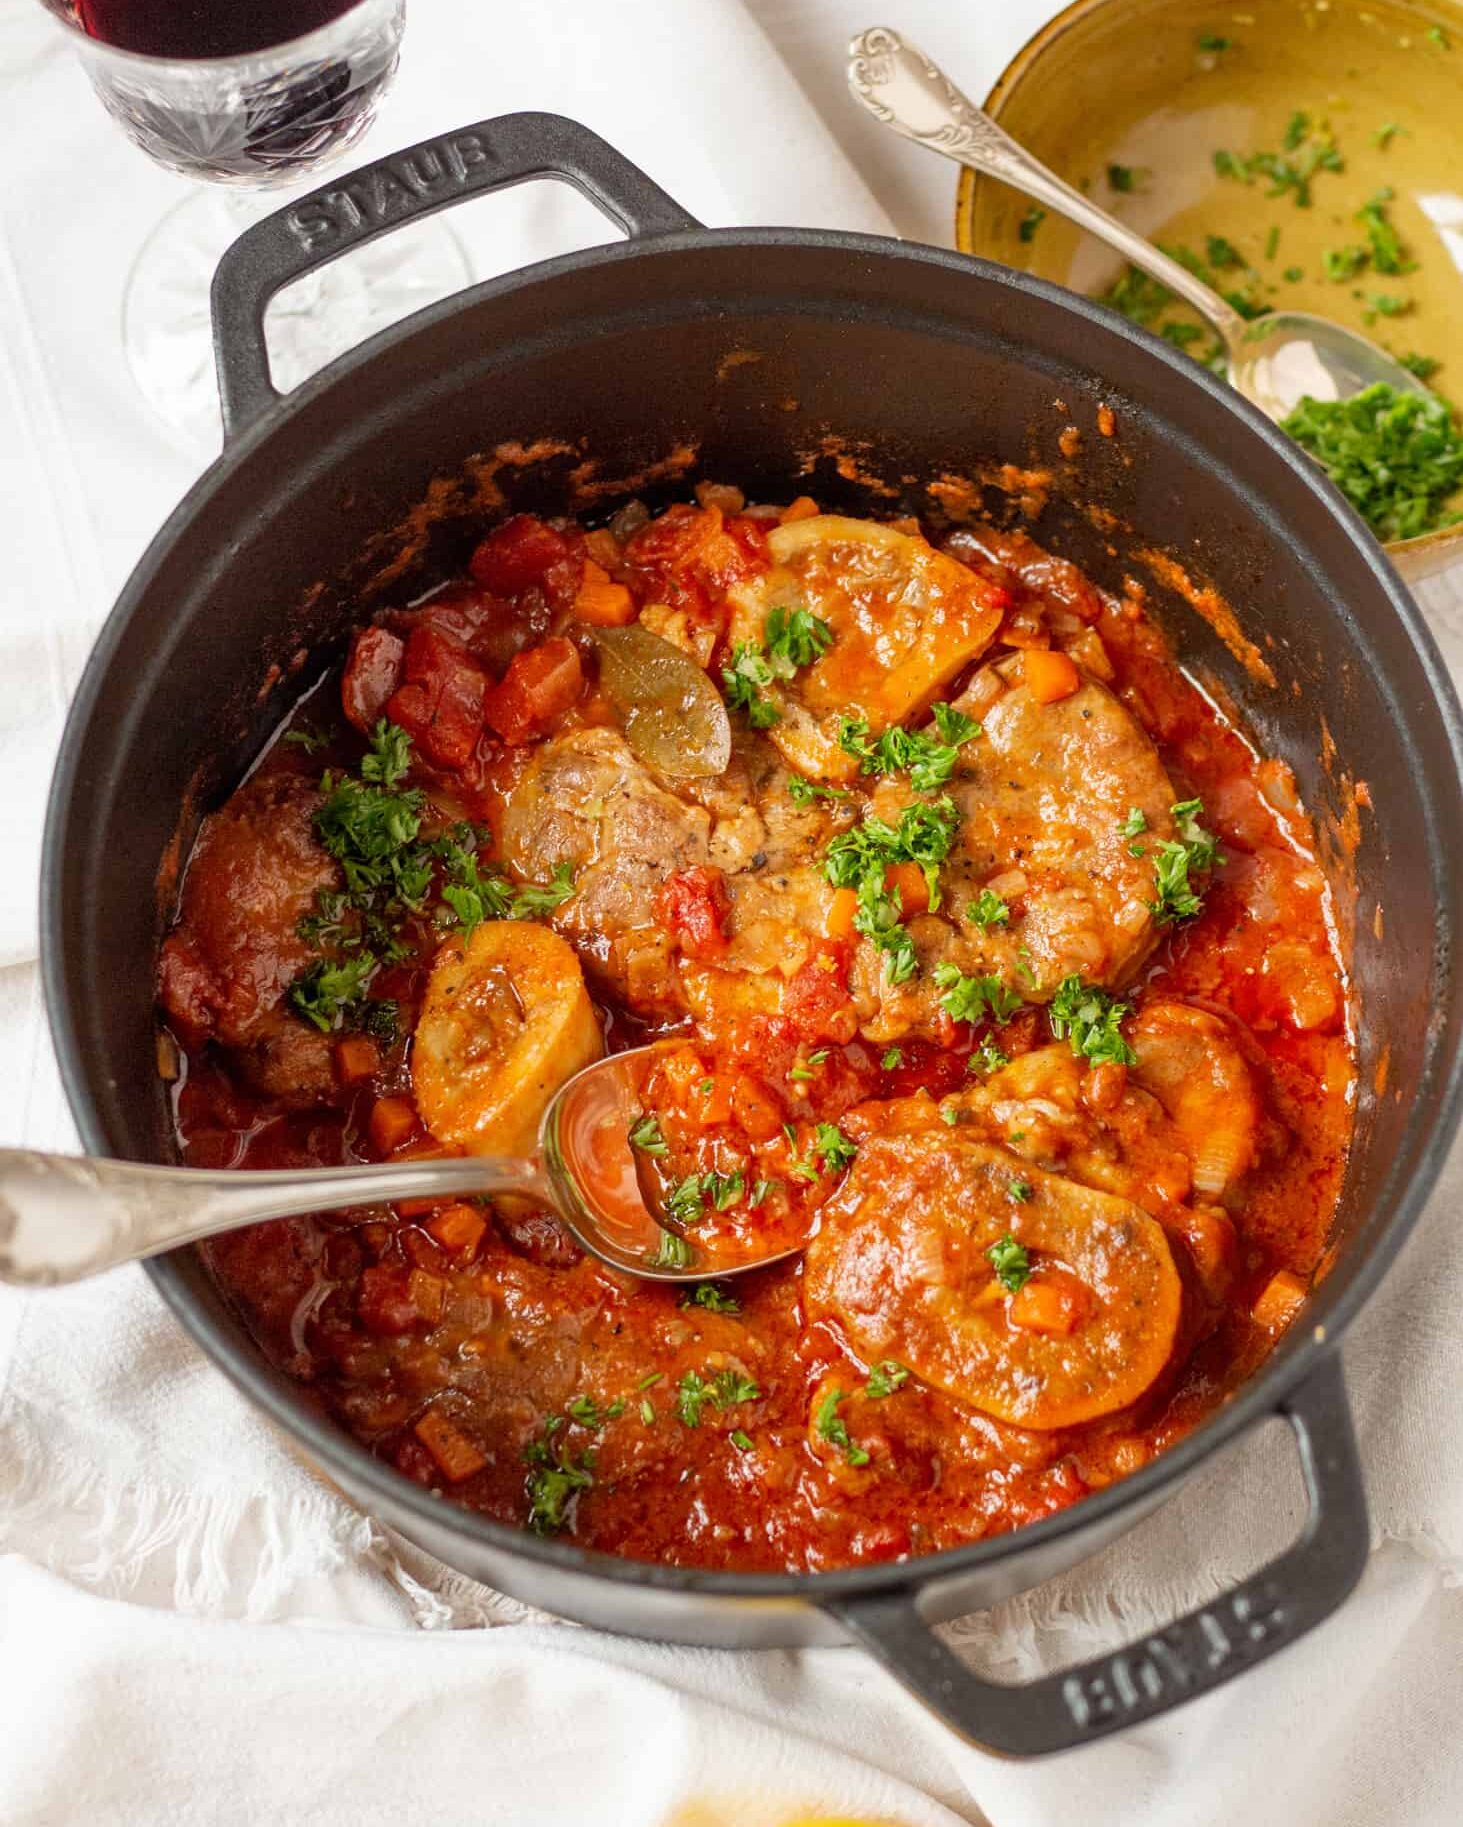 Оссобуко – это итальянское жаркое из телячьей голени. Мясо долго томится в гусятнике в ароматным соусе. Особый вкус блюду придёт гремолата.